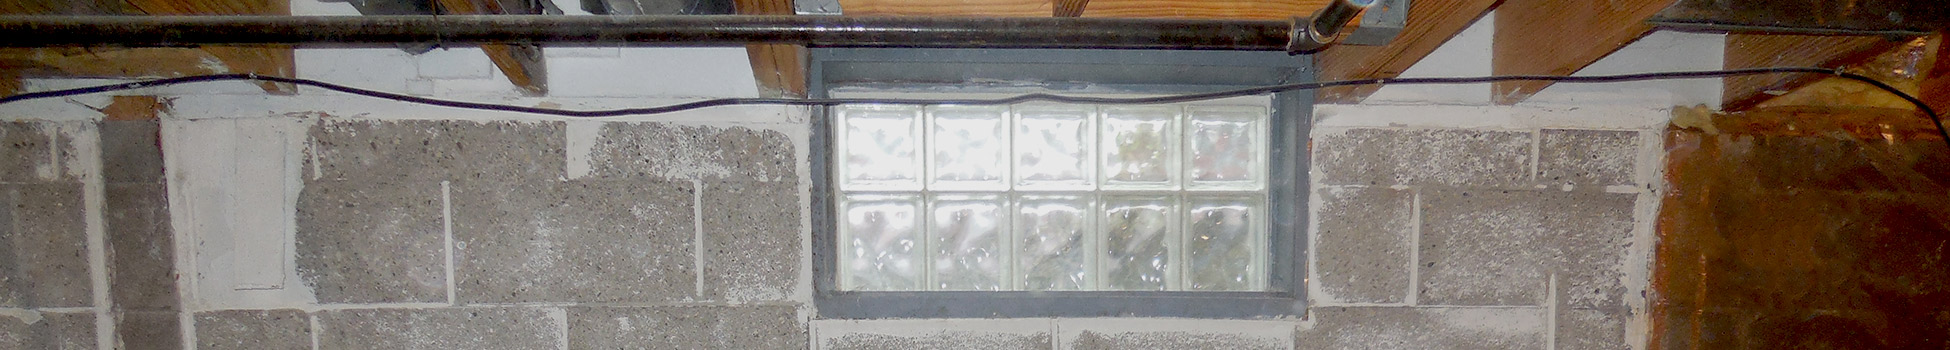 glass block windows in a cement block basement wall | glass block | basement doctor columbus